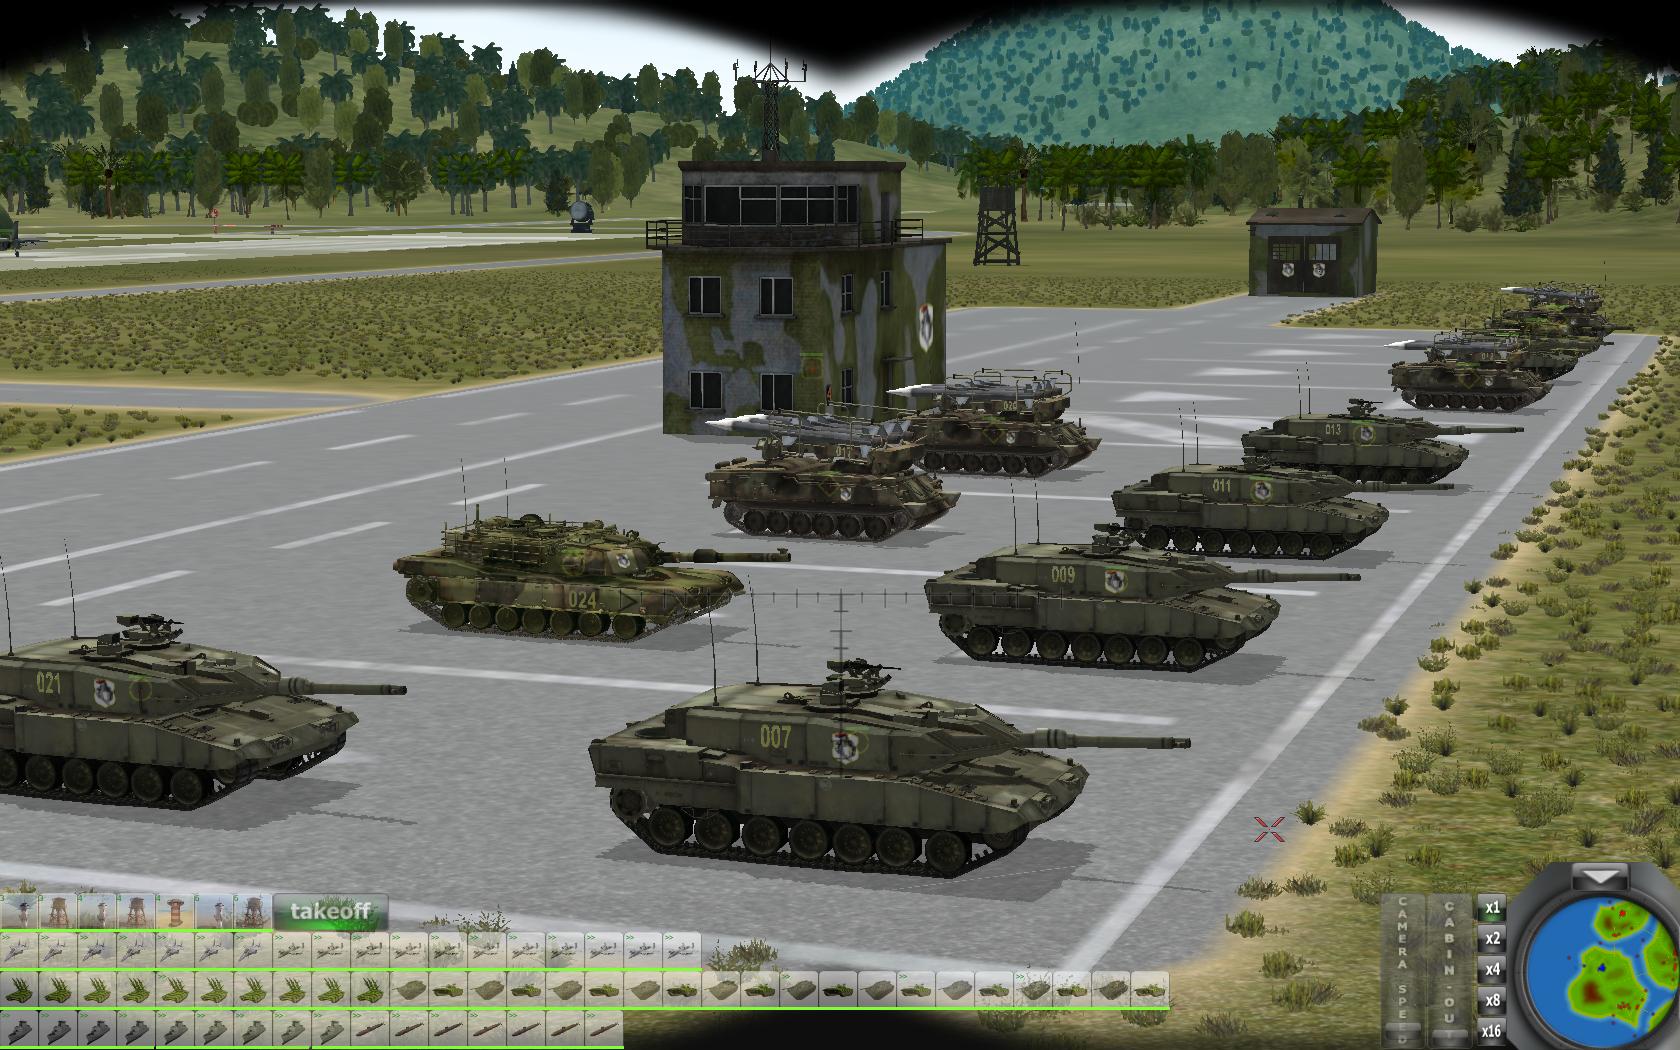 ww2 tank tactics vs modern